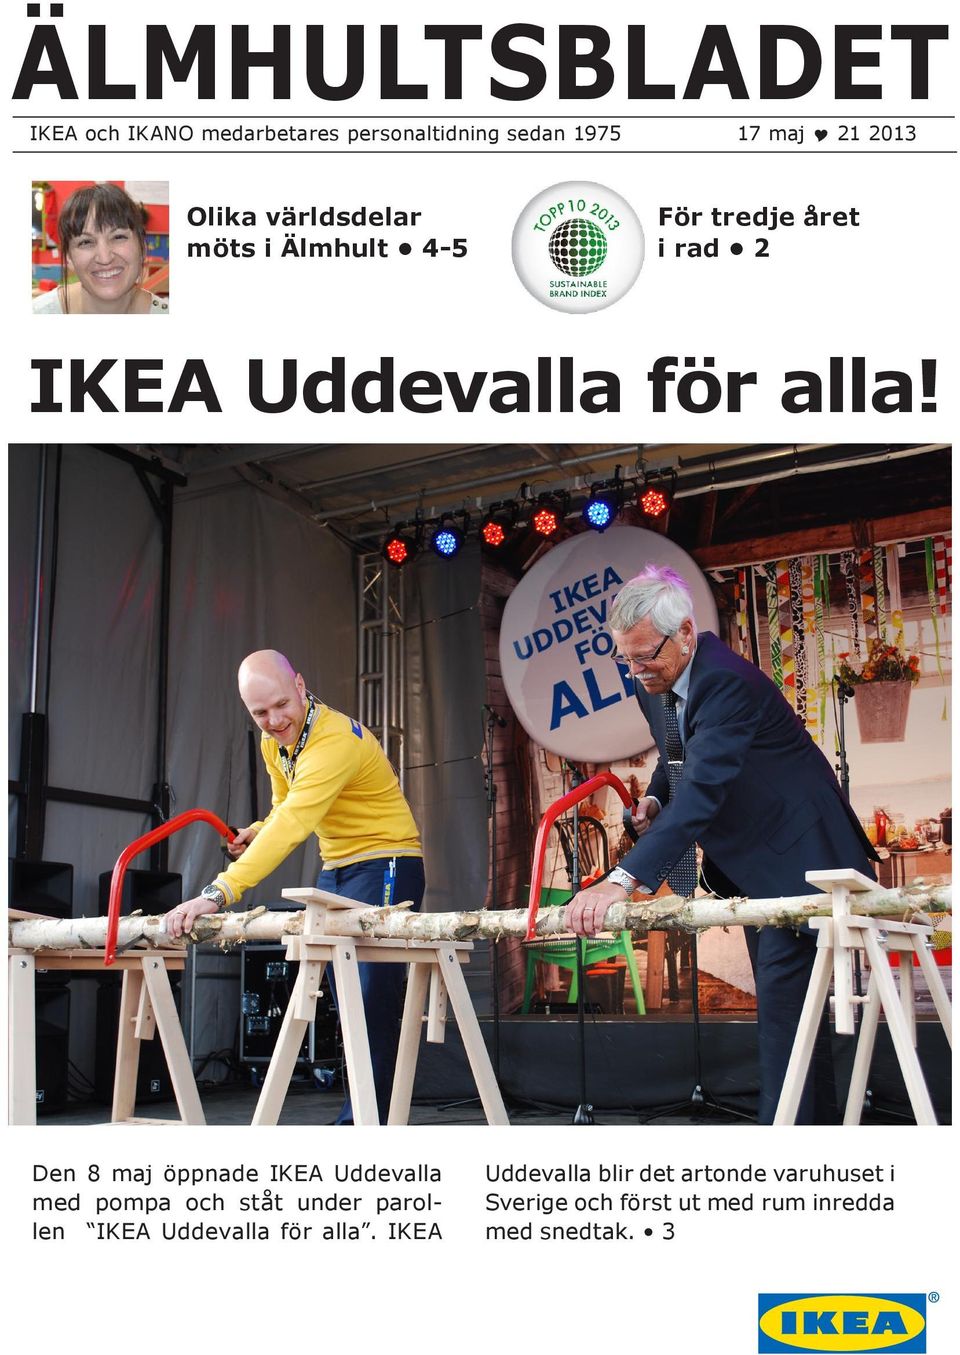 ÄLMHULTSBLADET. IKEA Uddevalla för alla! Olika världsdelar möts i Älmhult  4-5. För tredje året i rad 2 - PDF Free Download